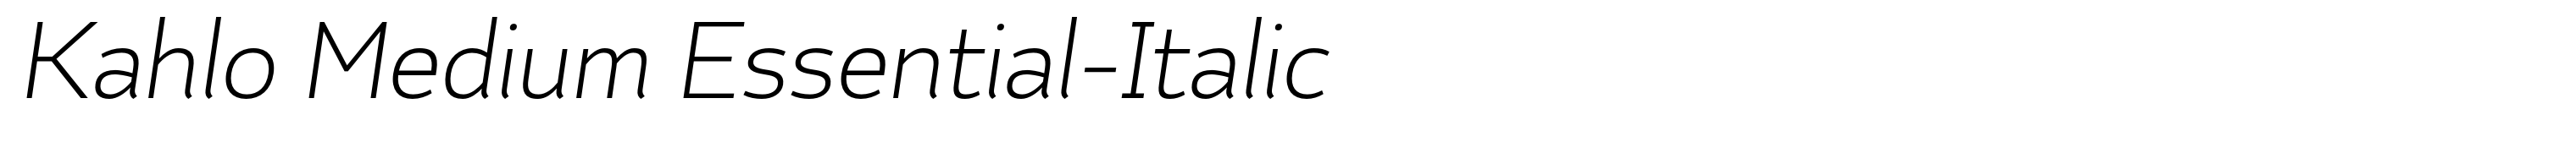 Kahlo Medium Essential-Italic